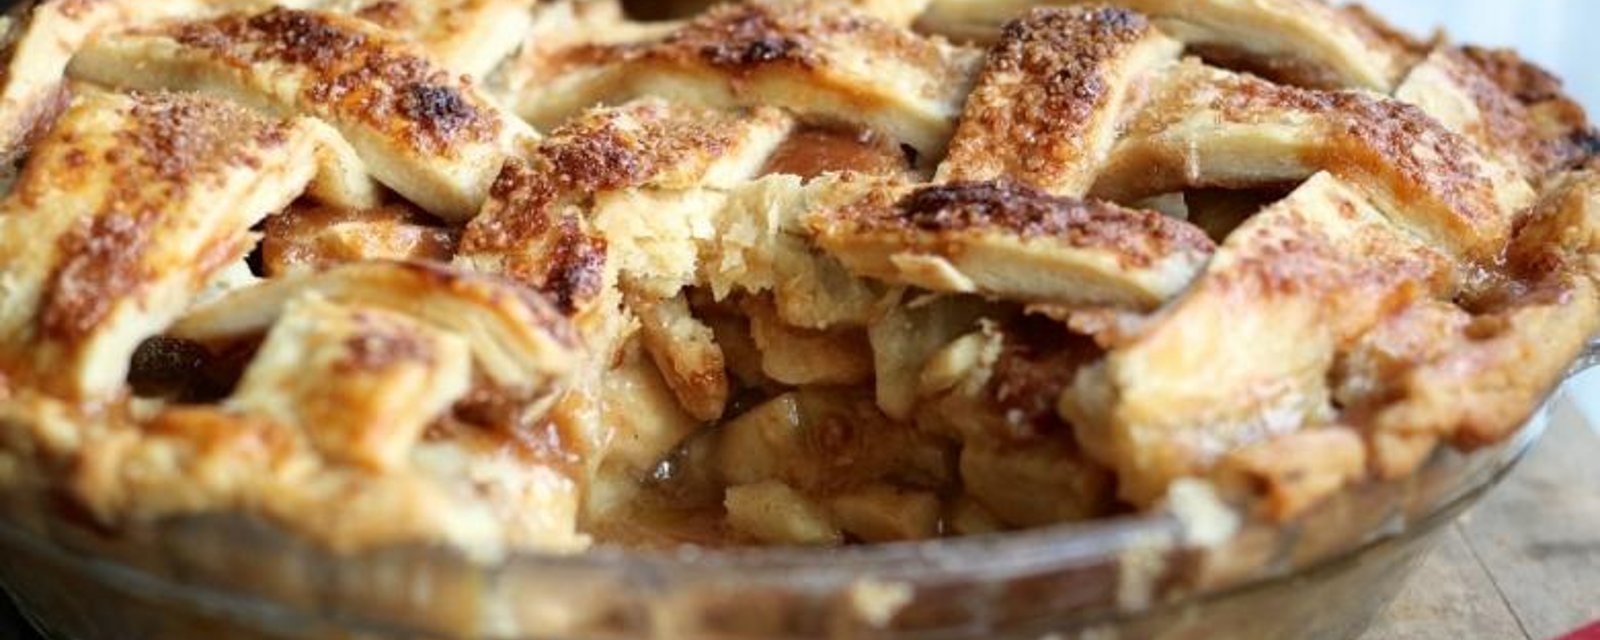 Une simple tarte aux pommes au caramel peut facilement voler la vedette !